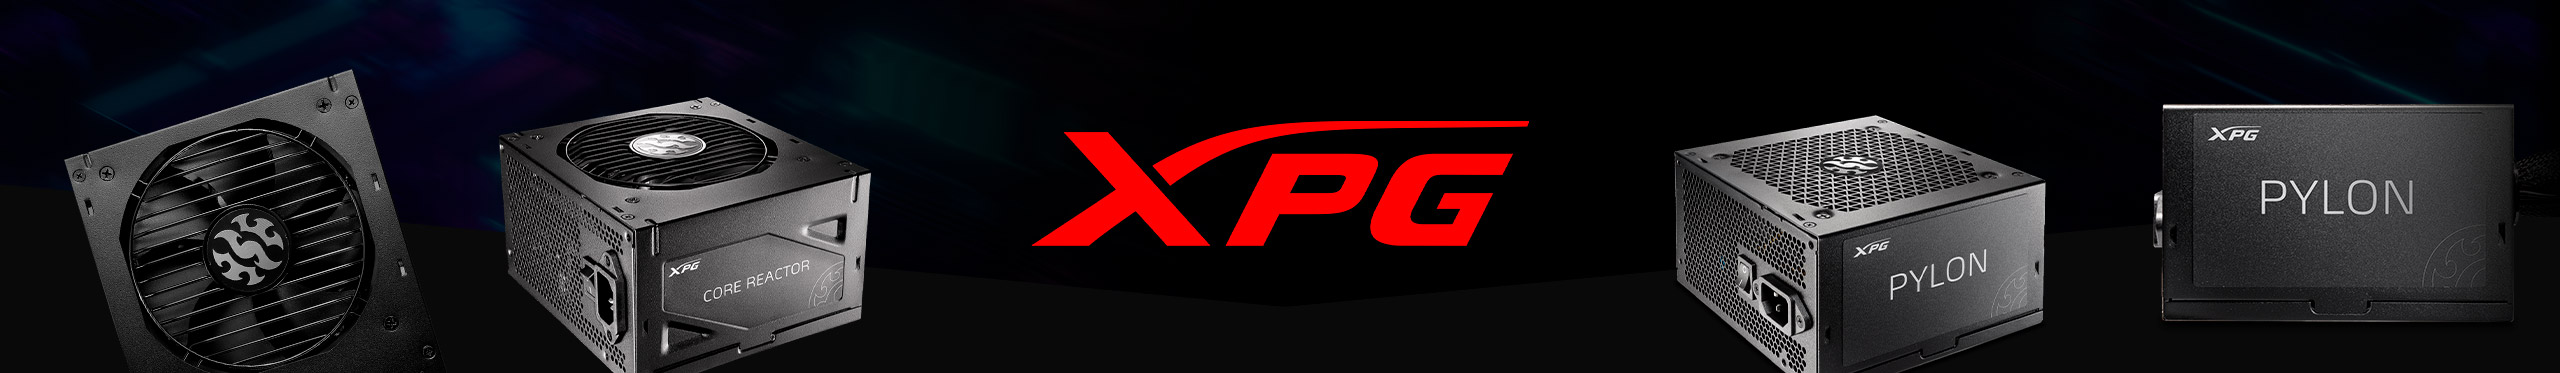 Deixe seu sistema mais poderoso com as fontes XPG.